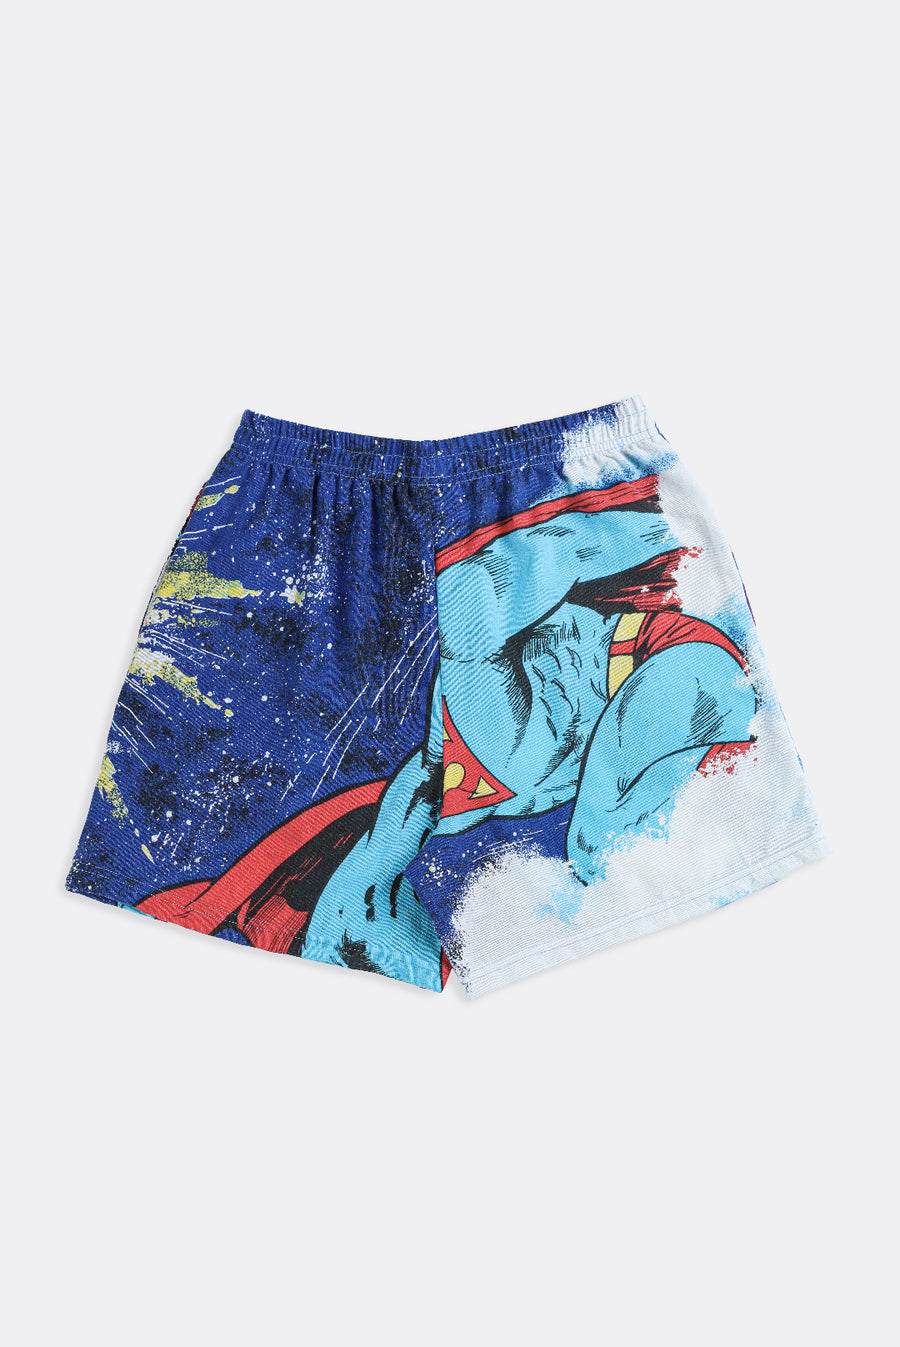 Unisex Rework Superman Boxer Shorts - S, M, L